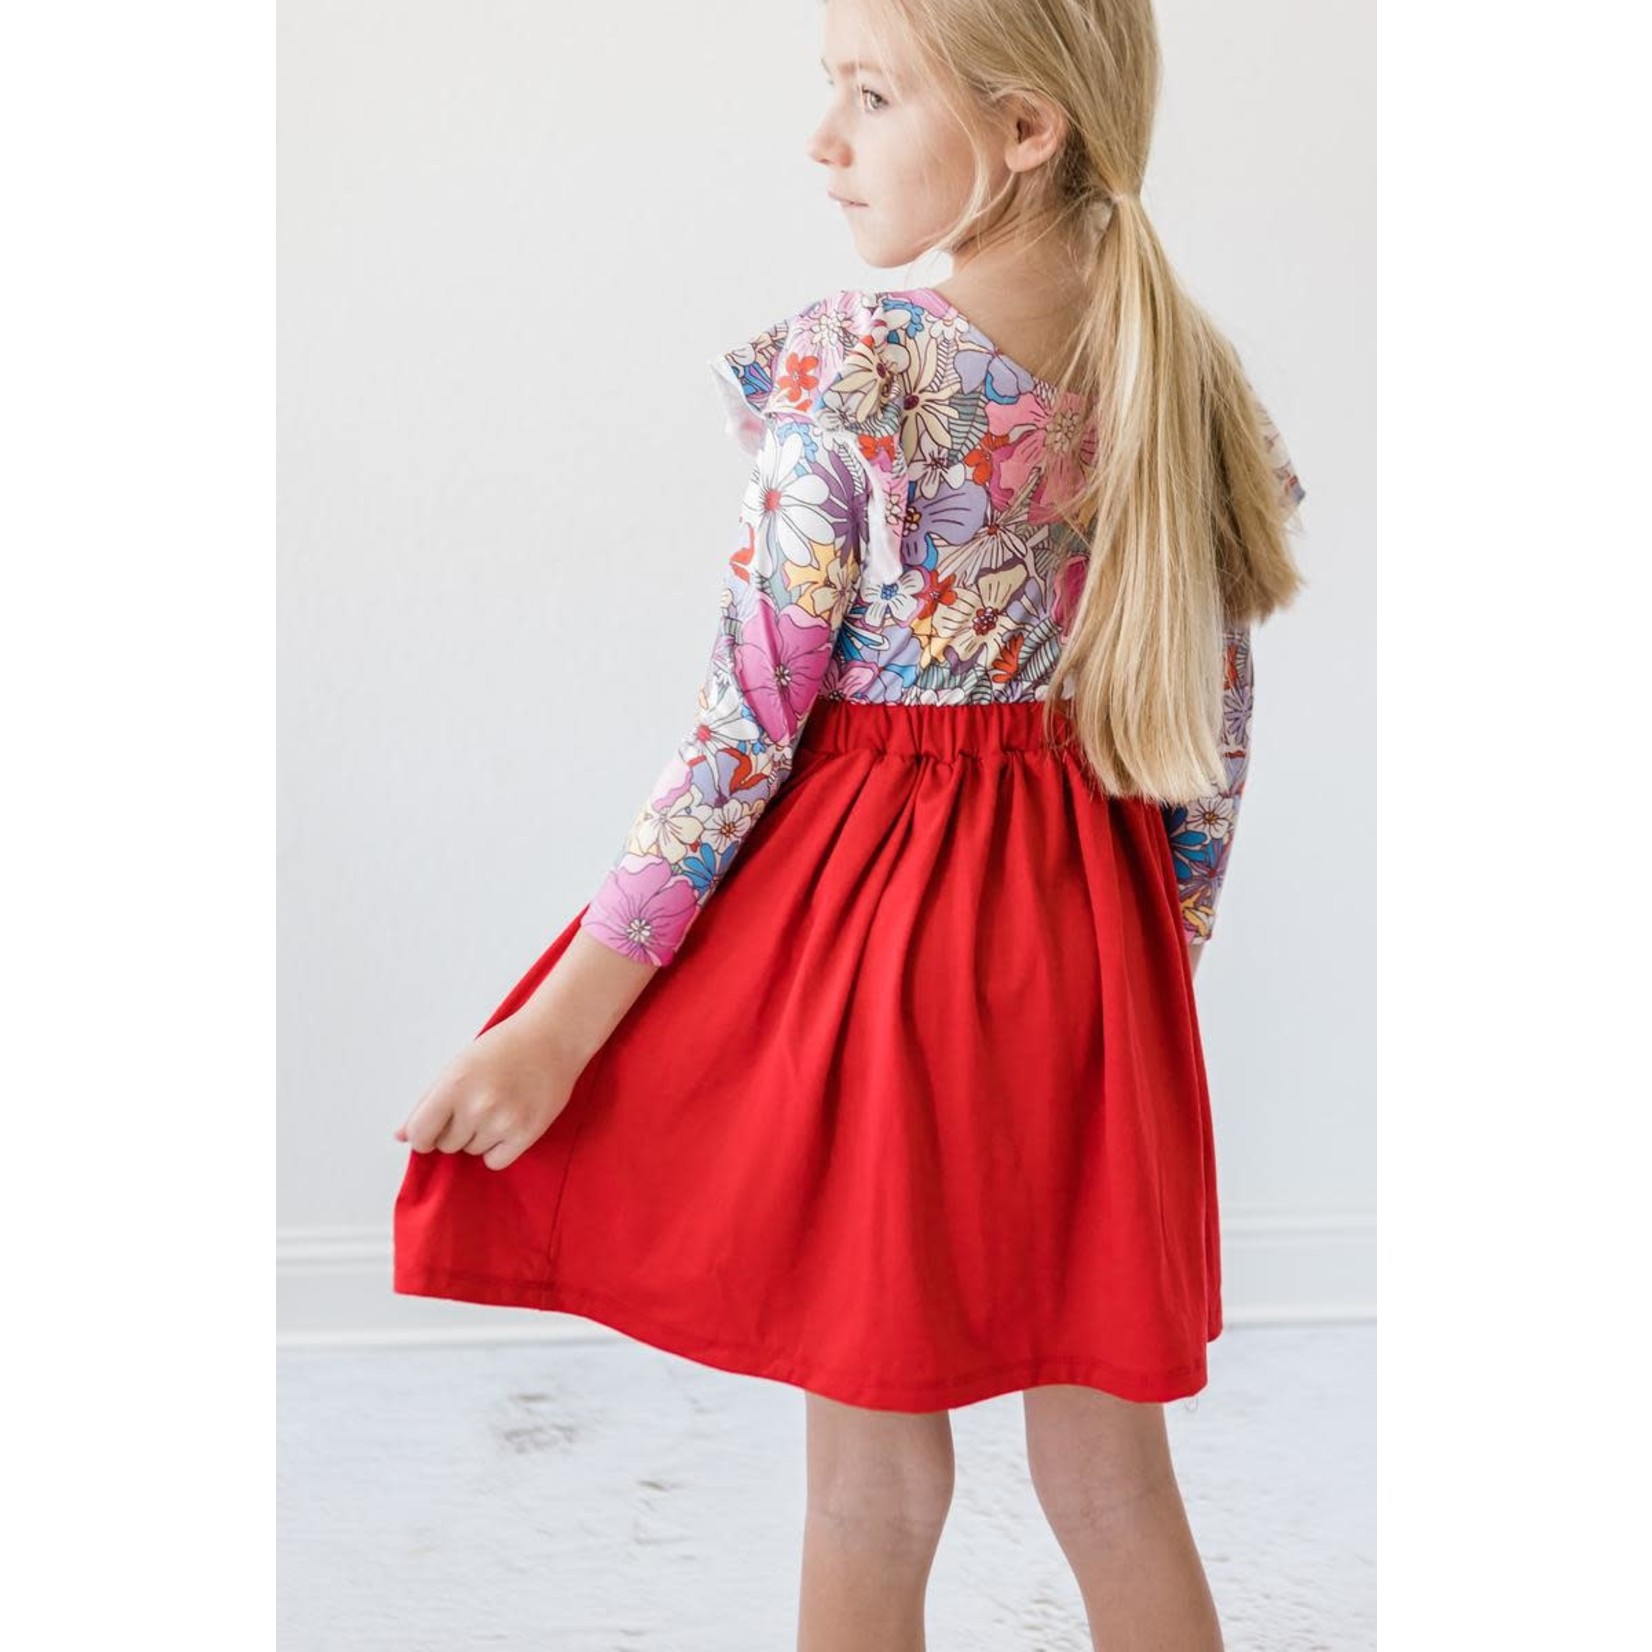 Mila & Rose Red Twirl Skirt